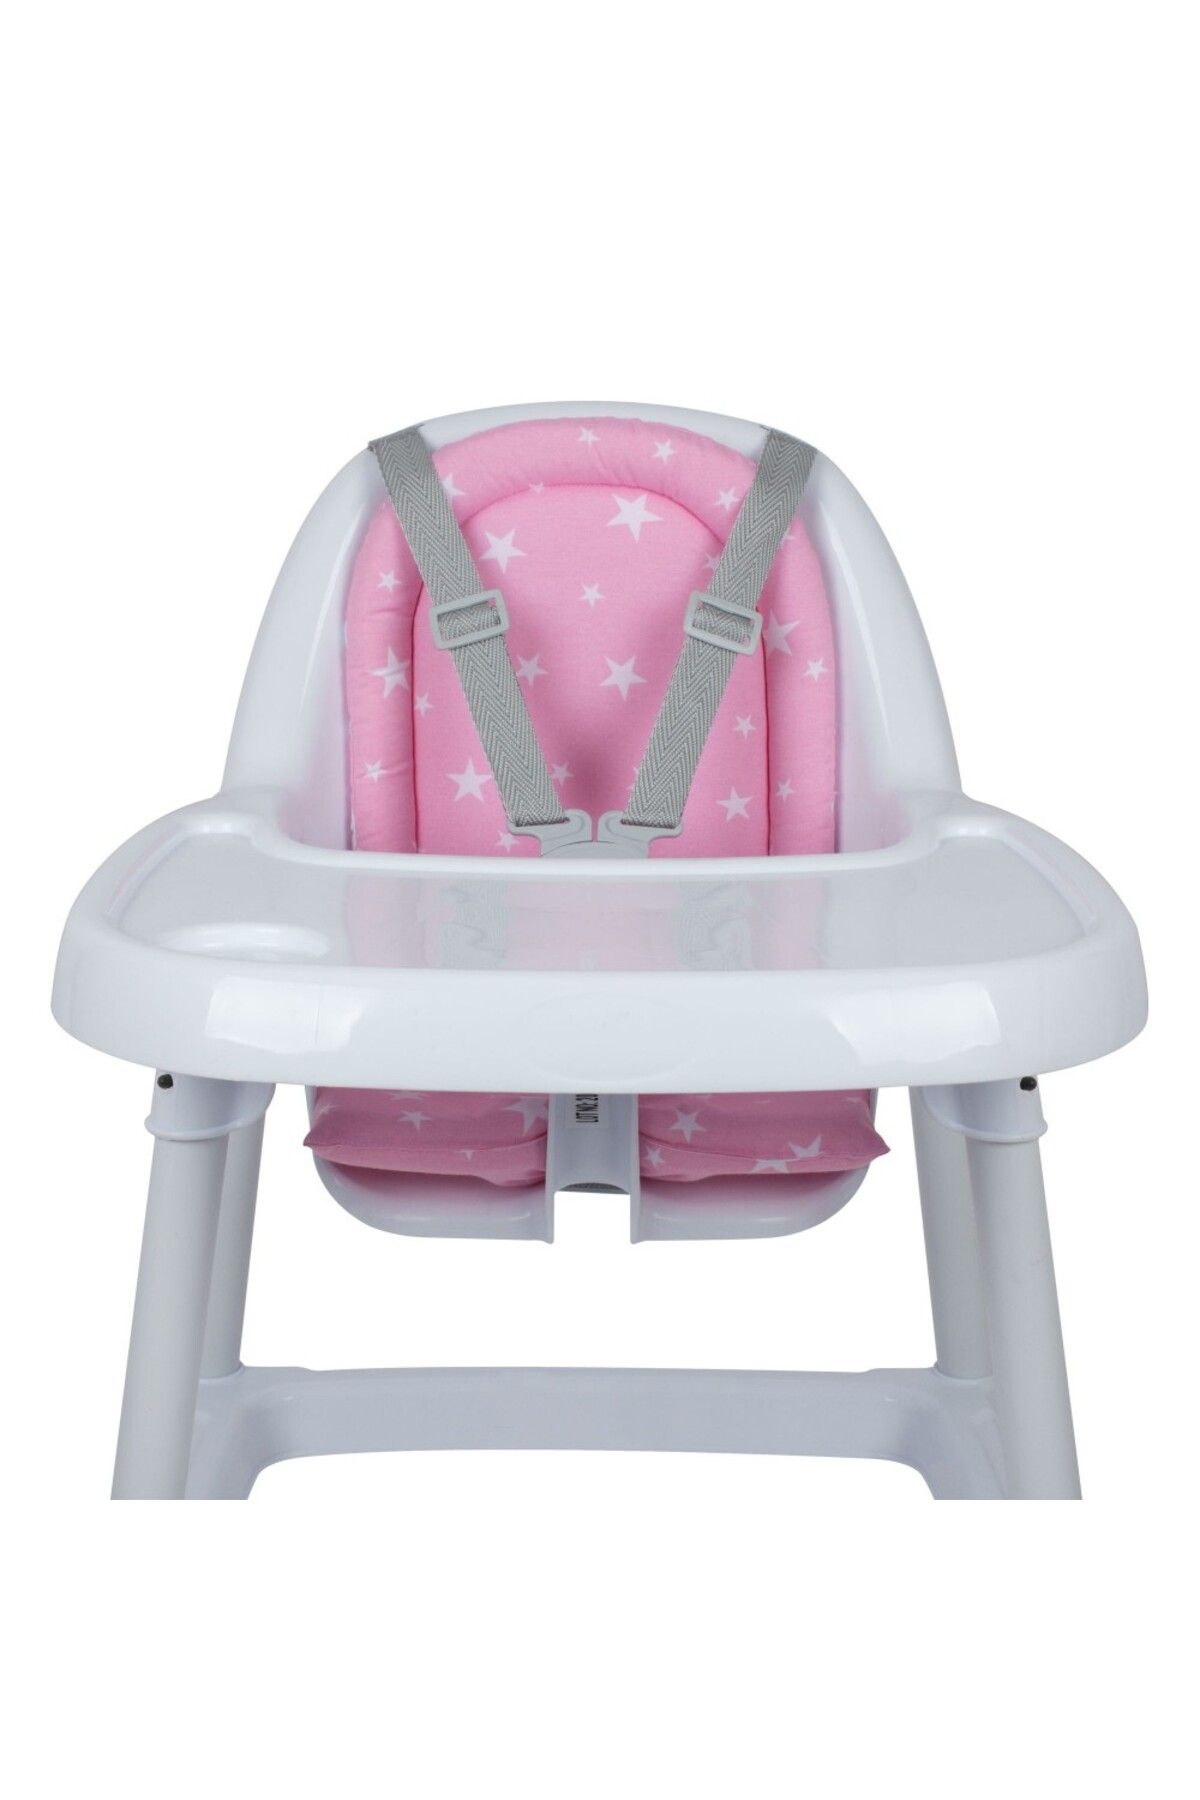 Sevi Bebe Eko Mama Sandalyesi Minderi Art-157 Pembe Yıldız